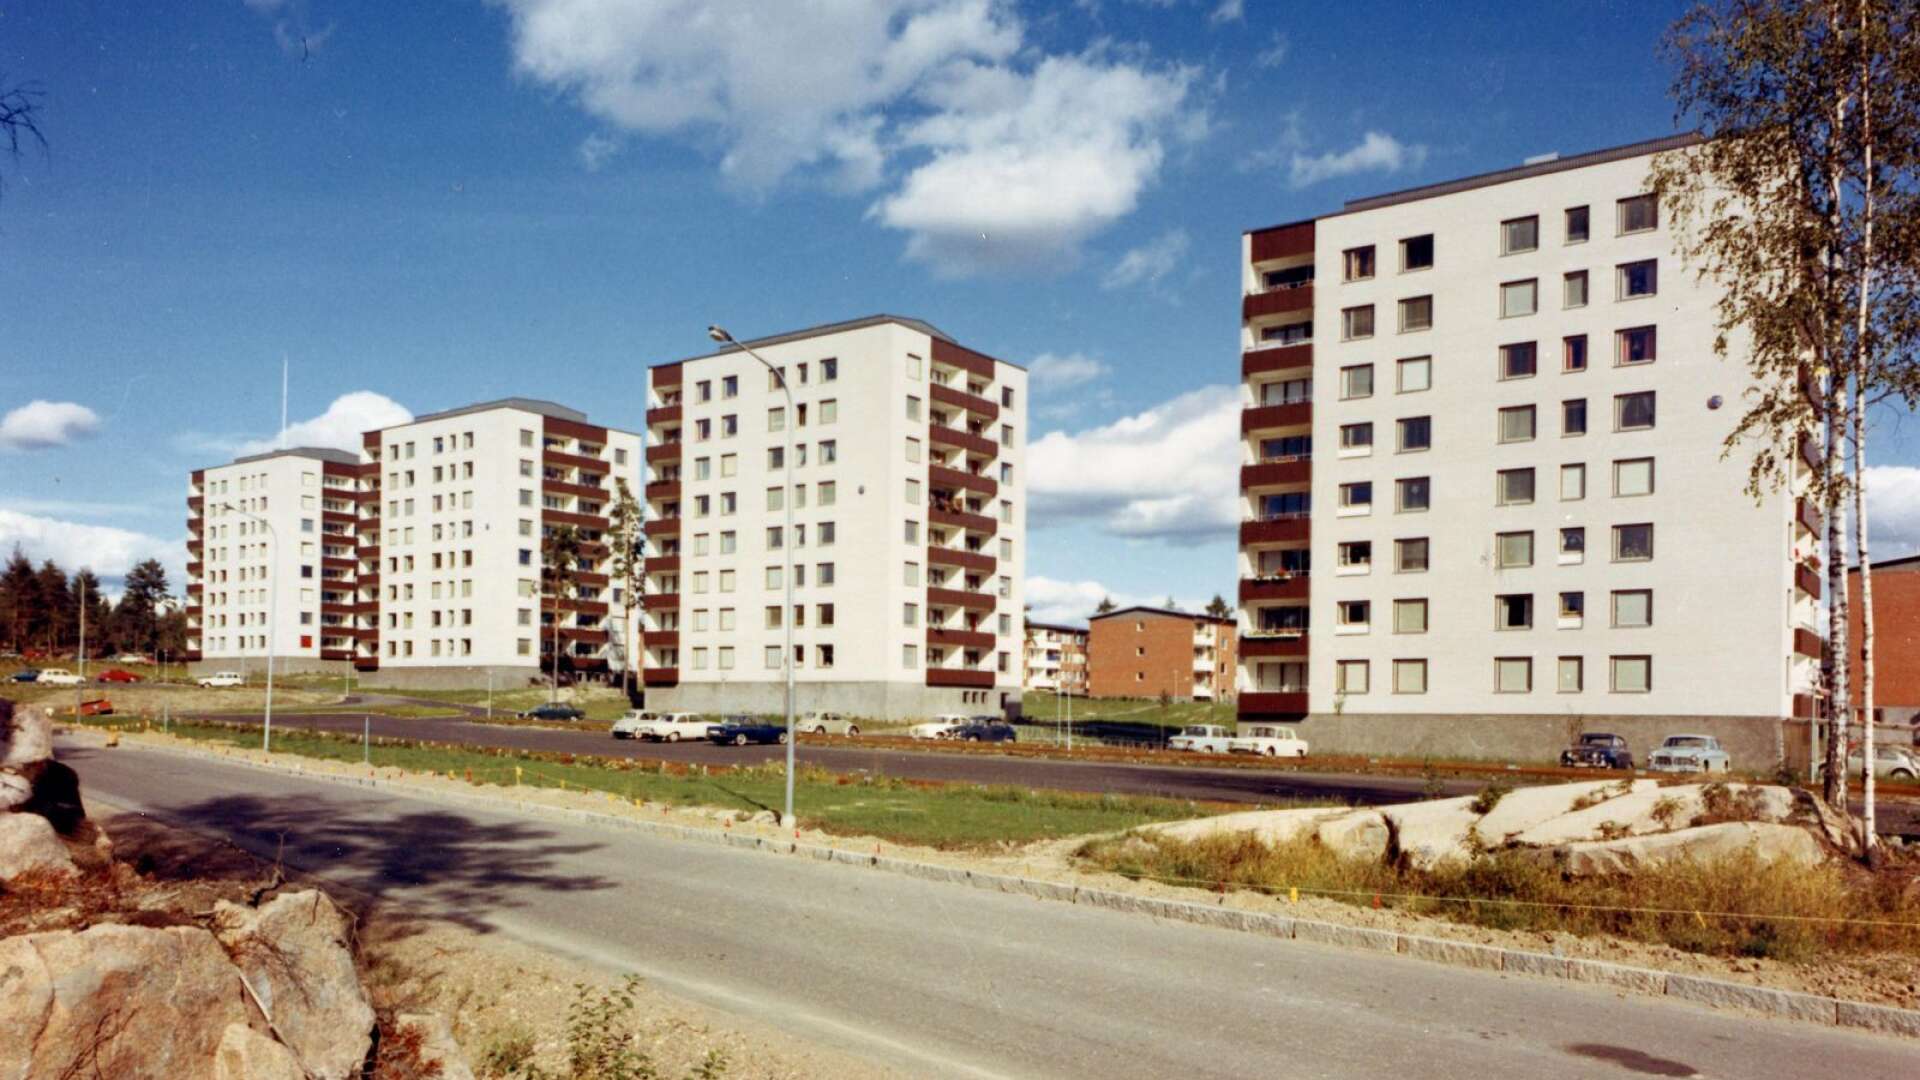 Horsensgatan 1969.